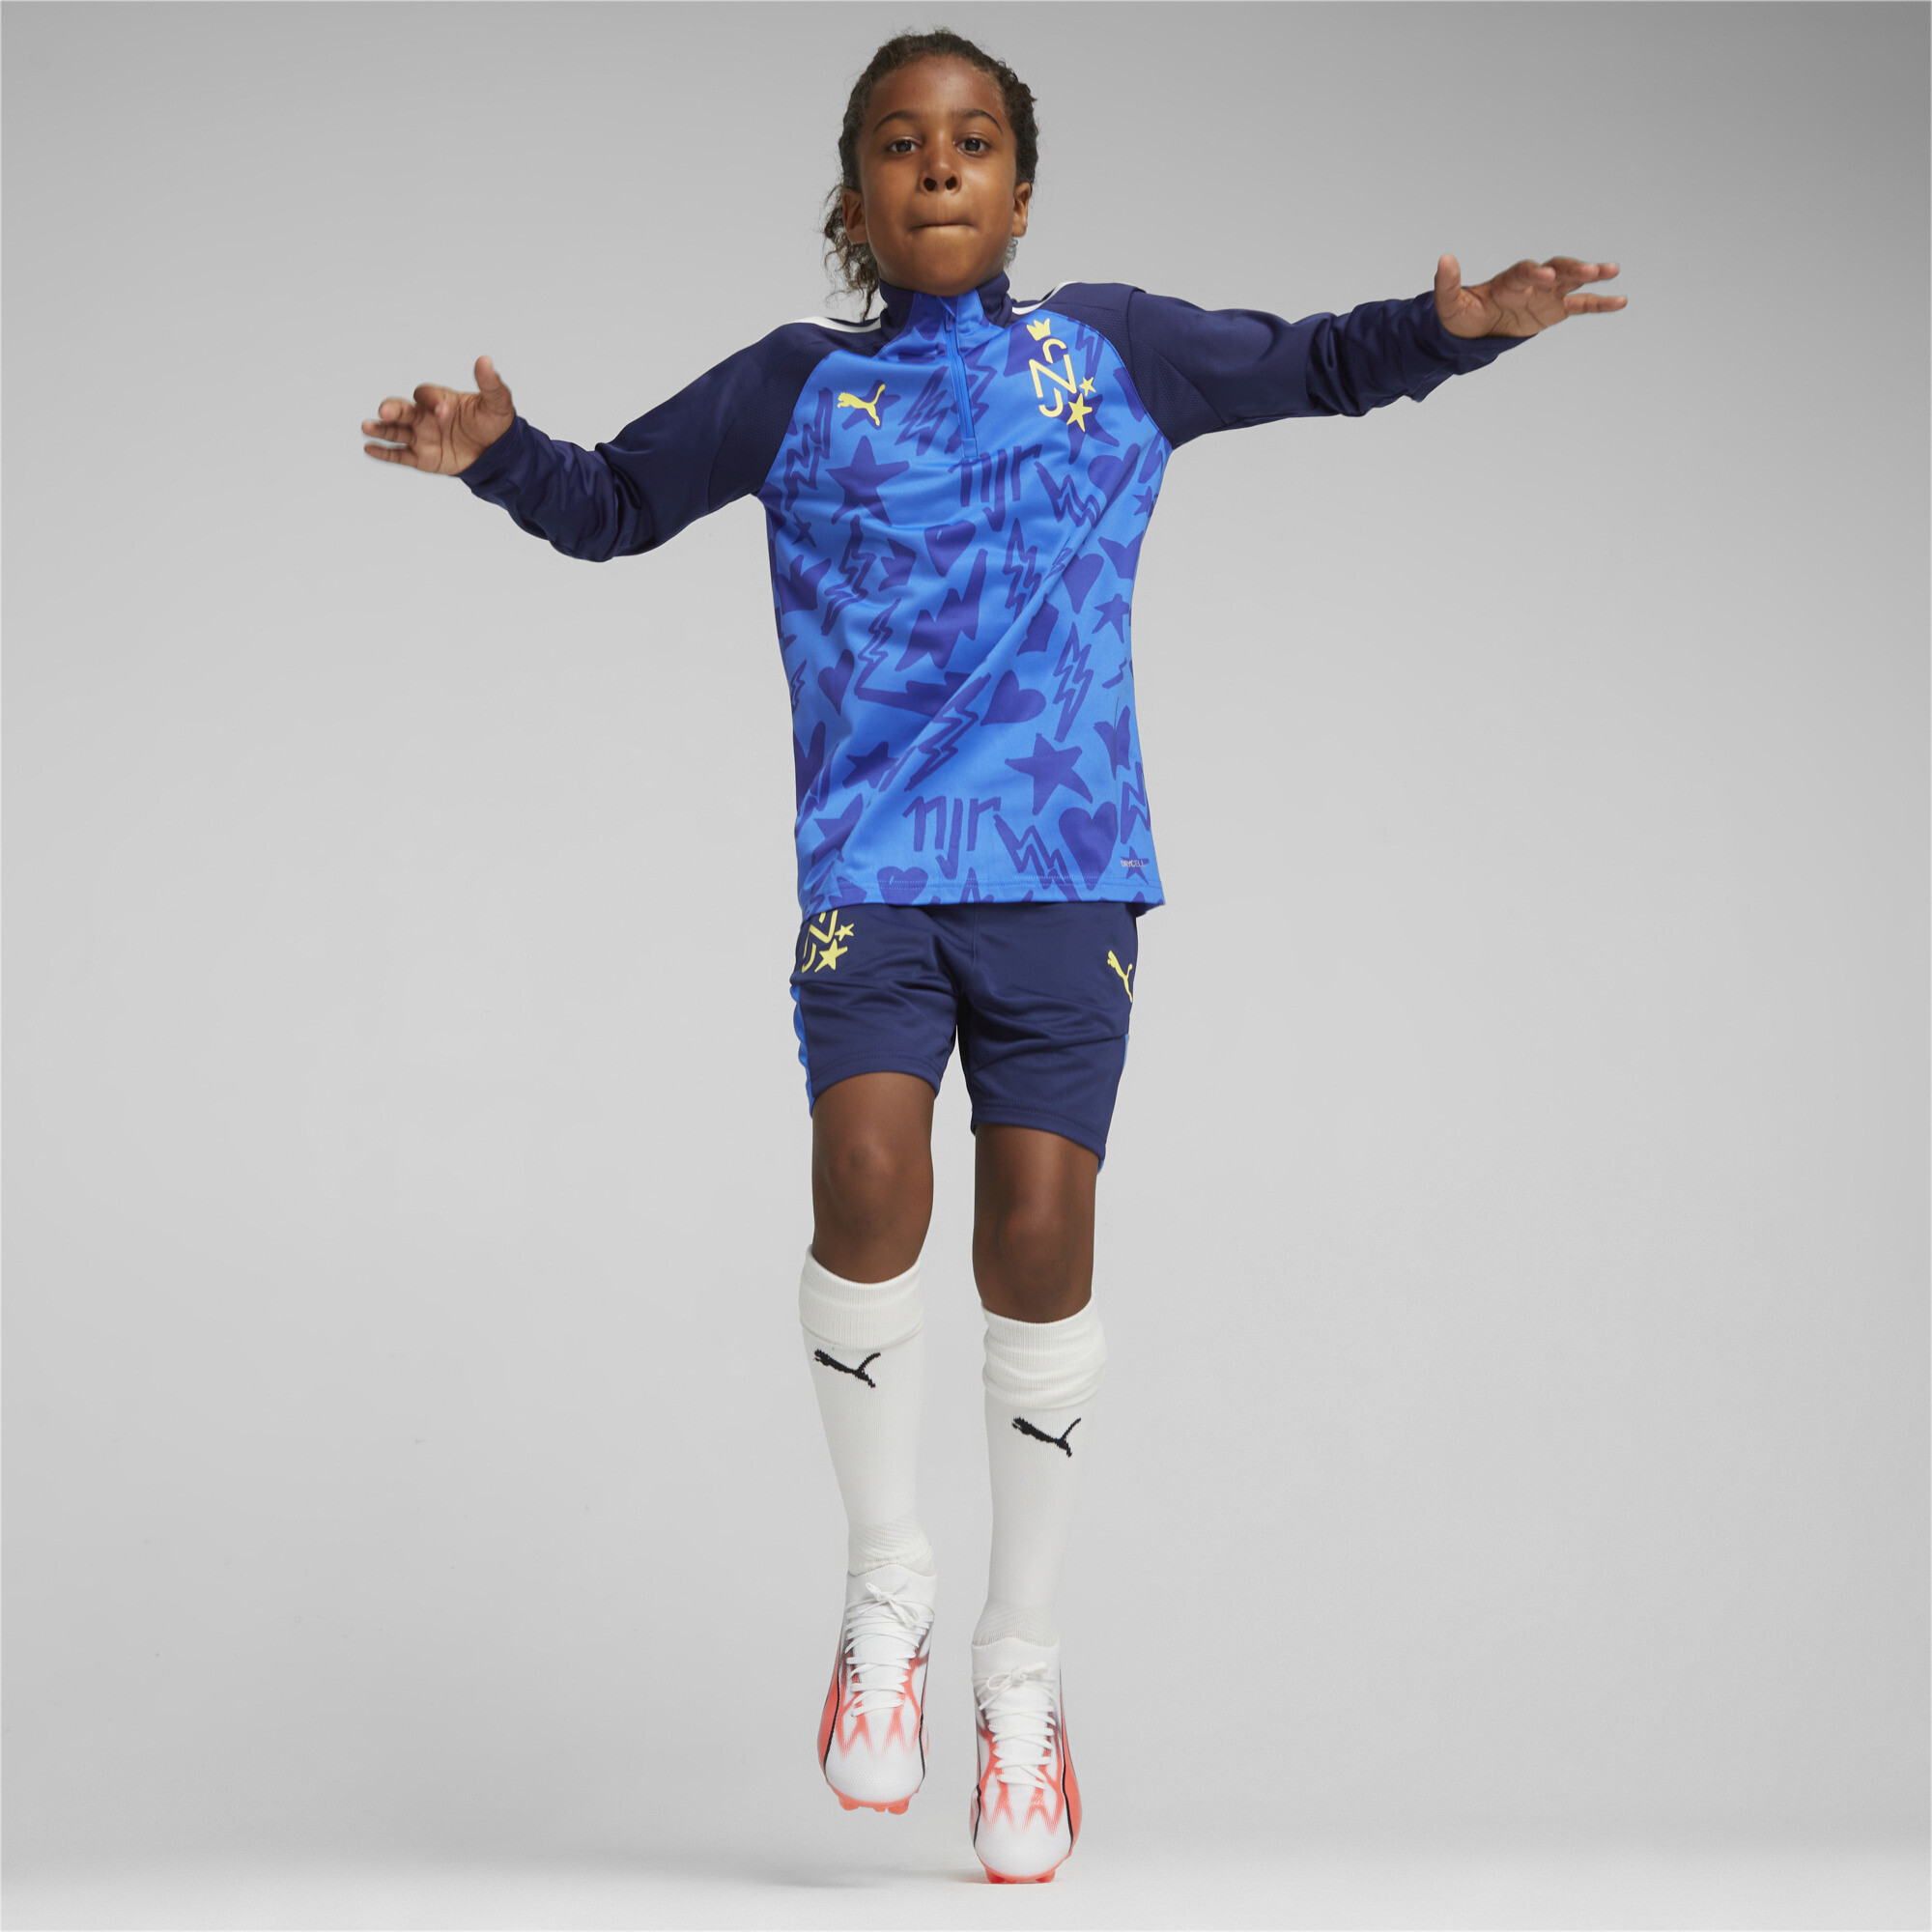 PUMA Neymar Jr Football Track Jacket In Blue, Size 13-14 Youth